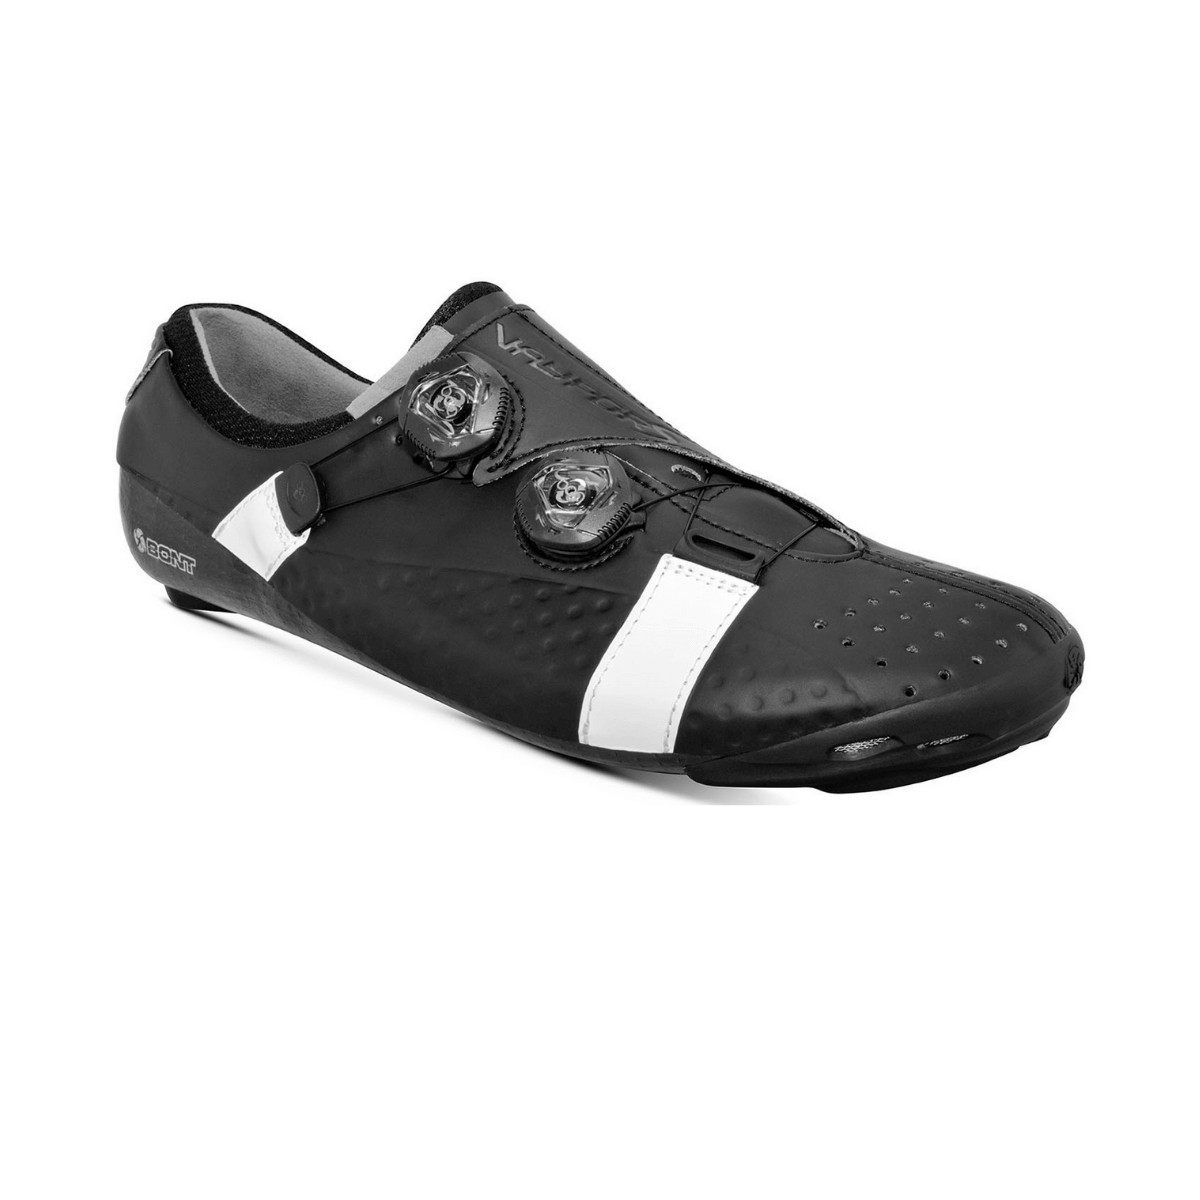 Bont Vaypor S road shoes Black White, Size 42 - EUR